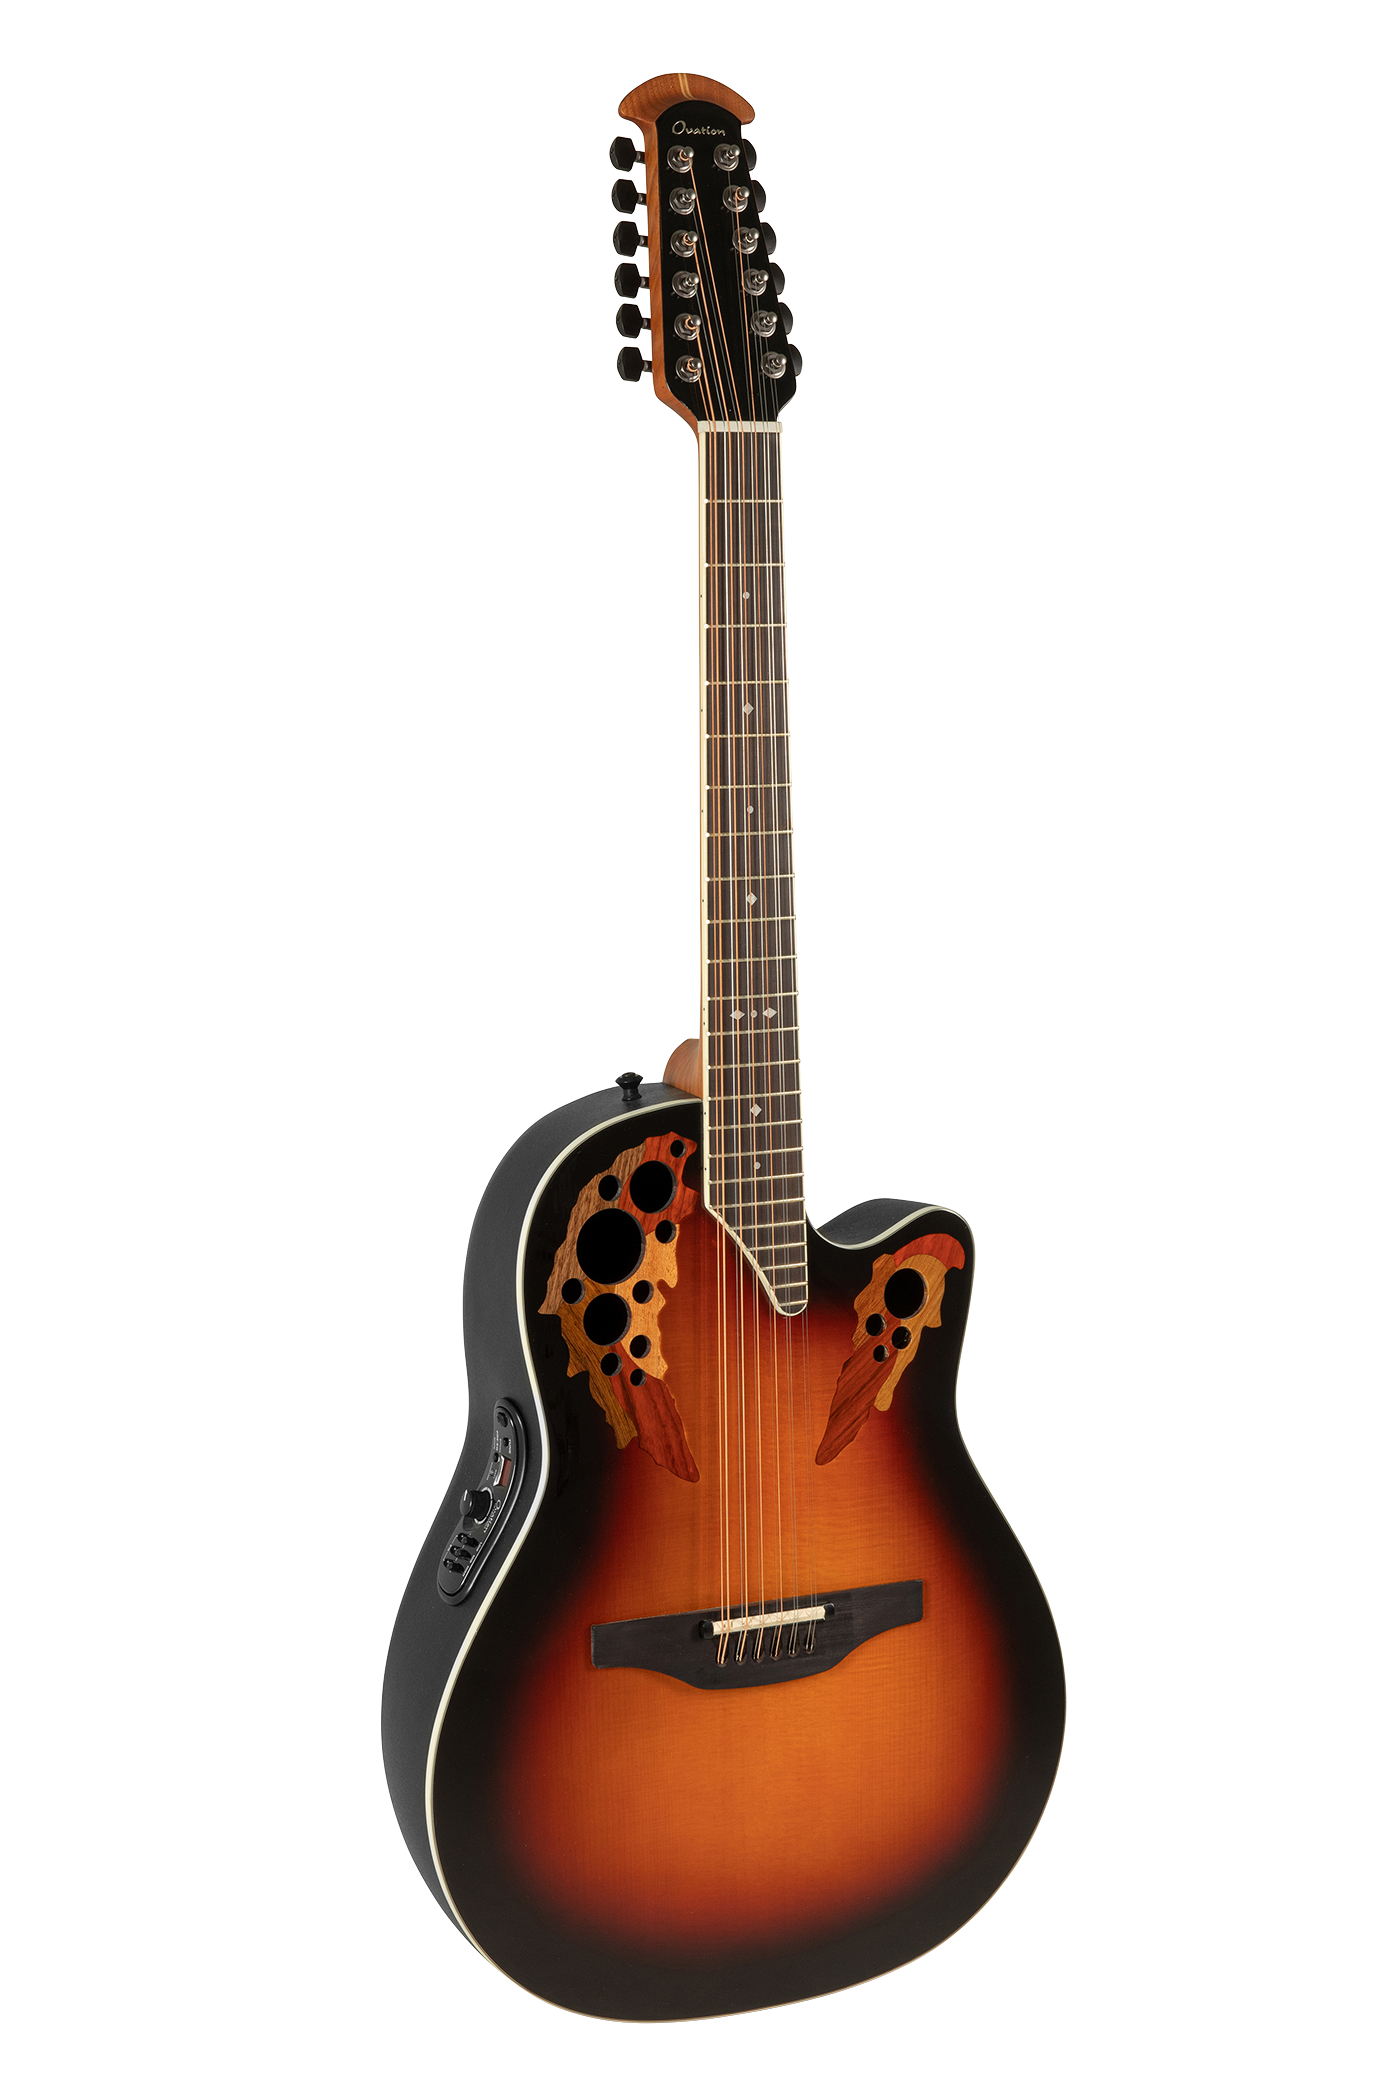 Ovation Guitar Strap Ultra® Padded Ball Glove Leather, Black, .531.9137-5Z